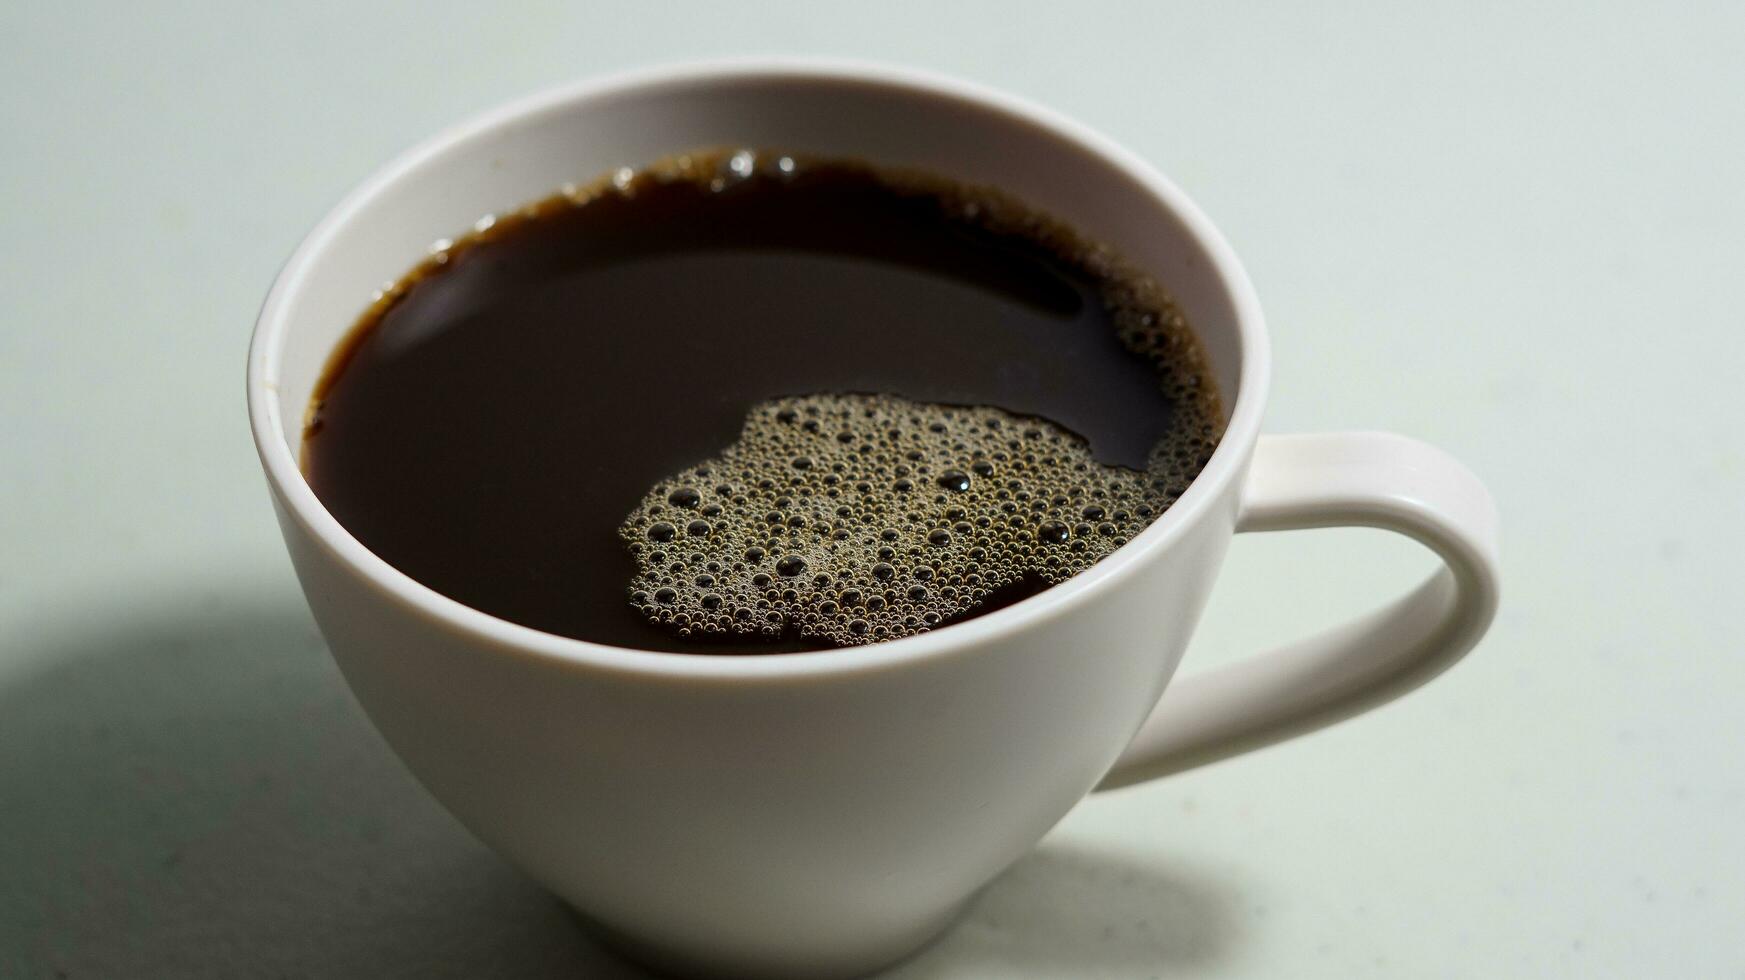 svart kaffe i en vit kopp foto